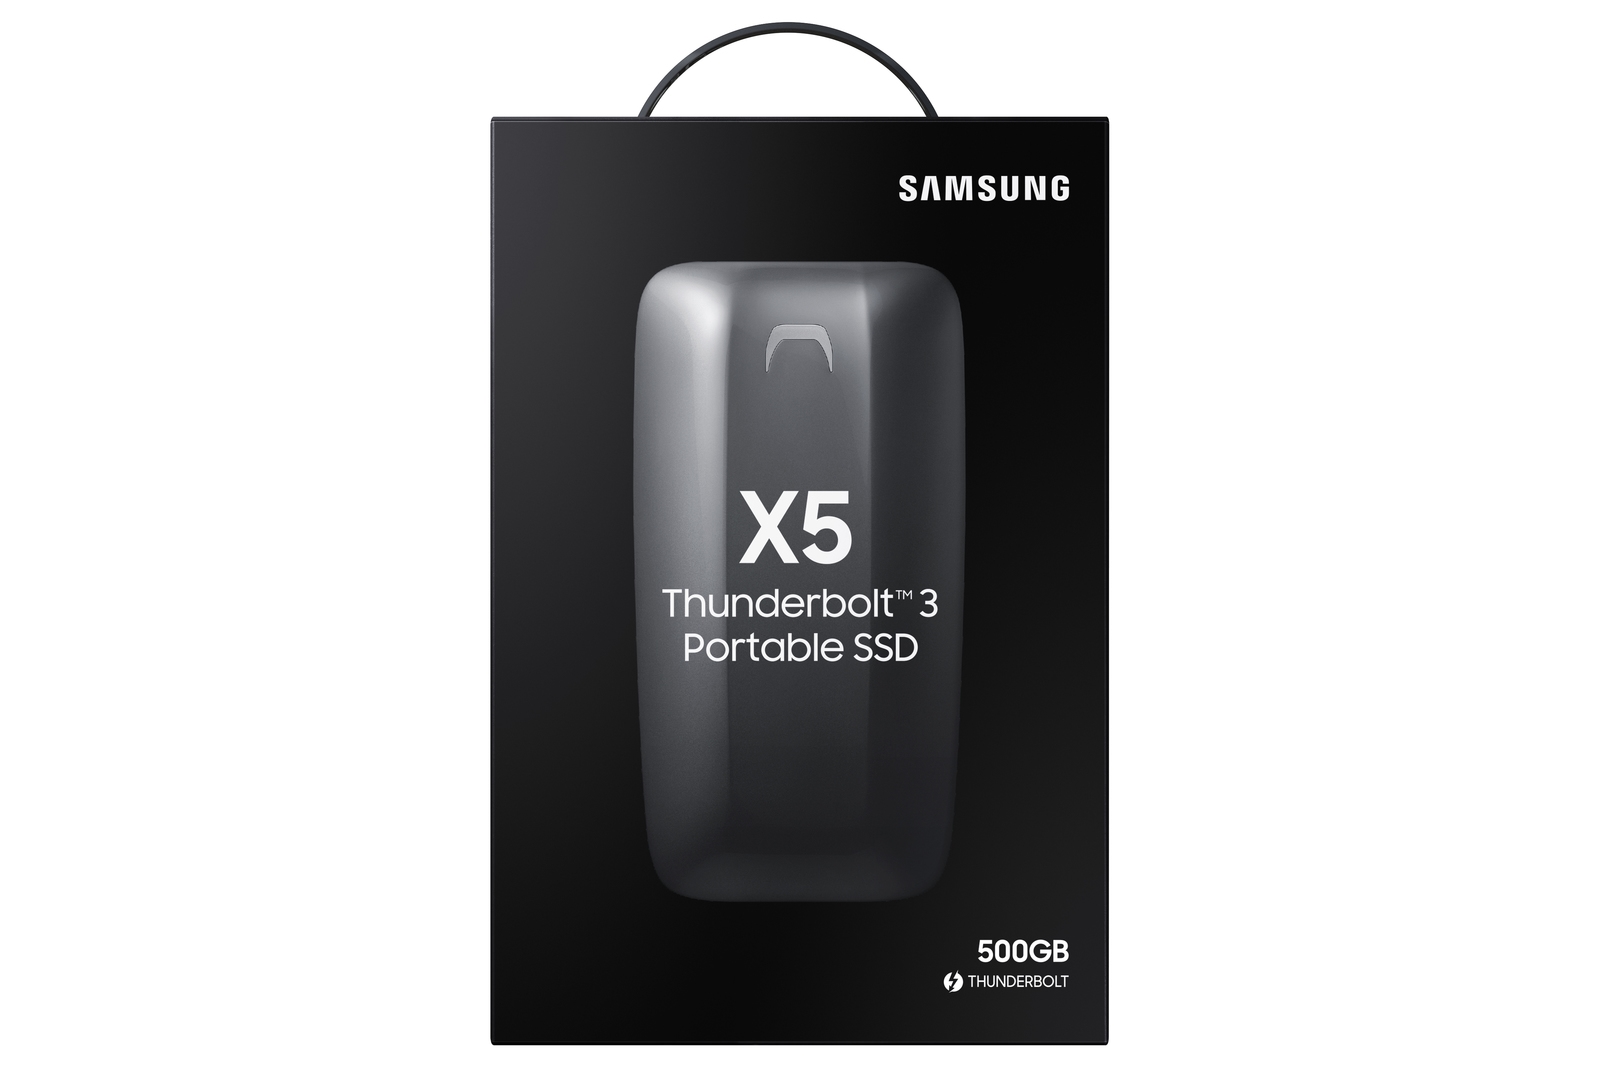 Portable SSD X5 Memory & Storage - MU-PB500B/AM | Samsung US